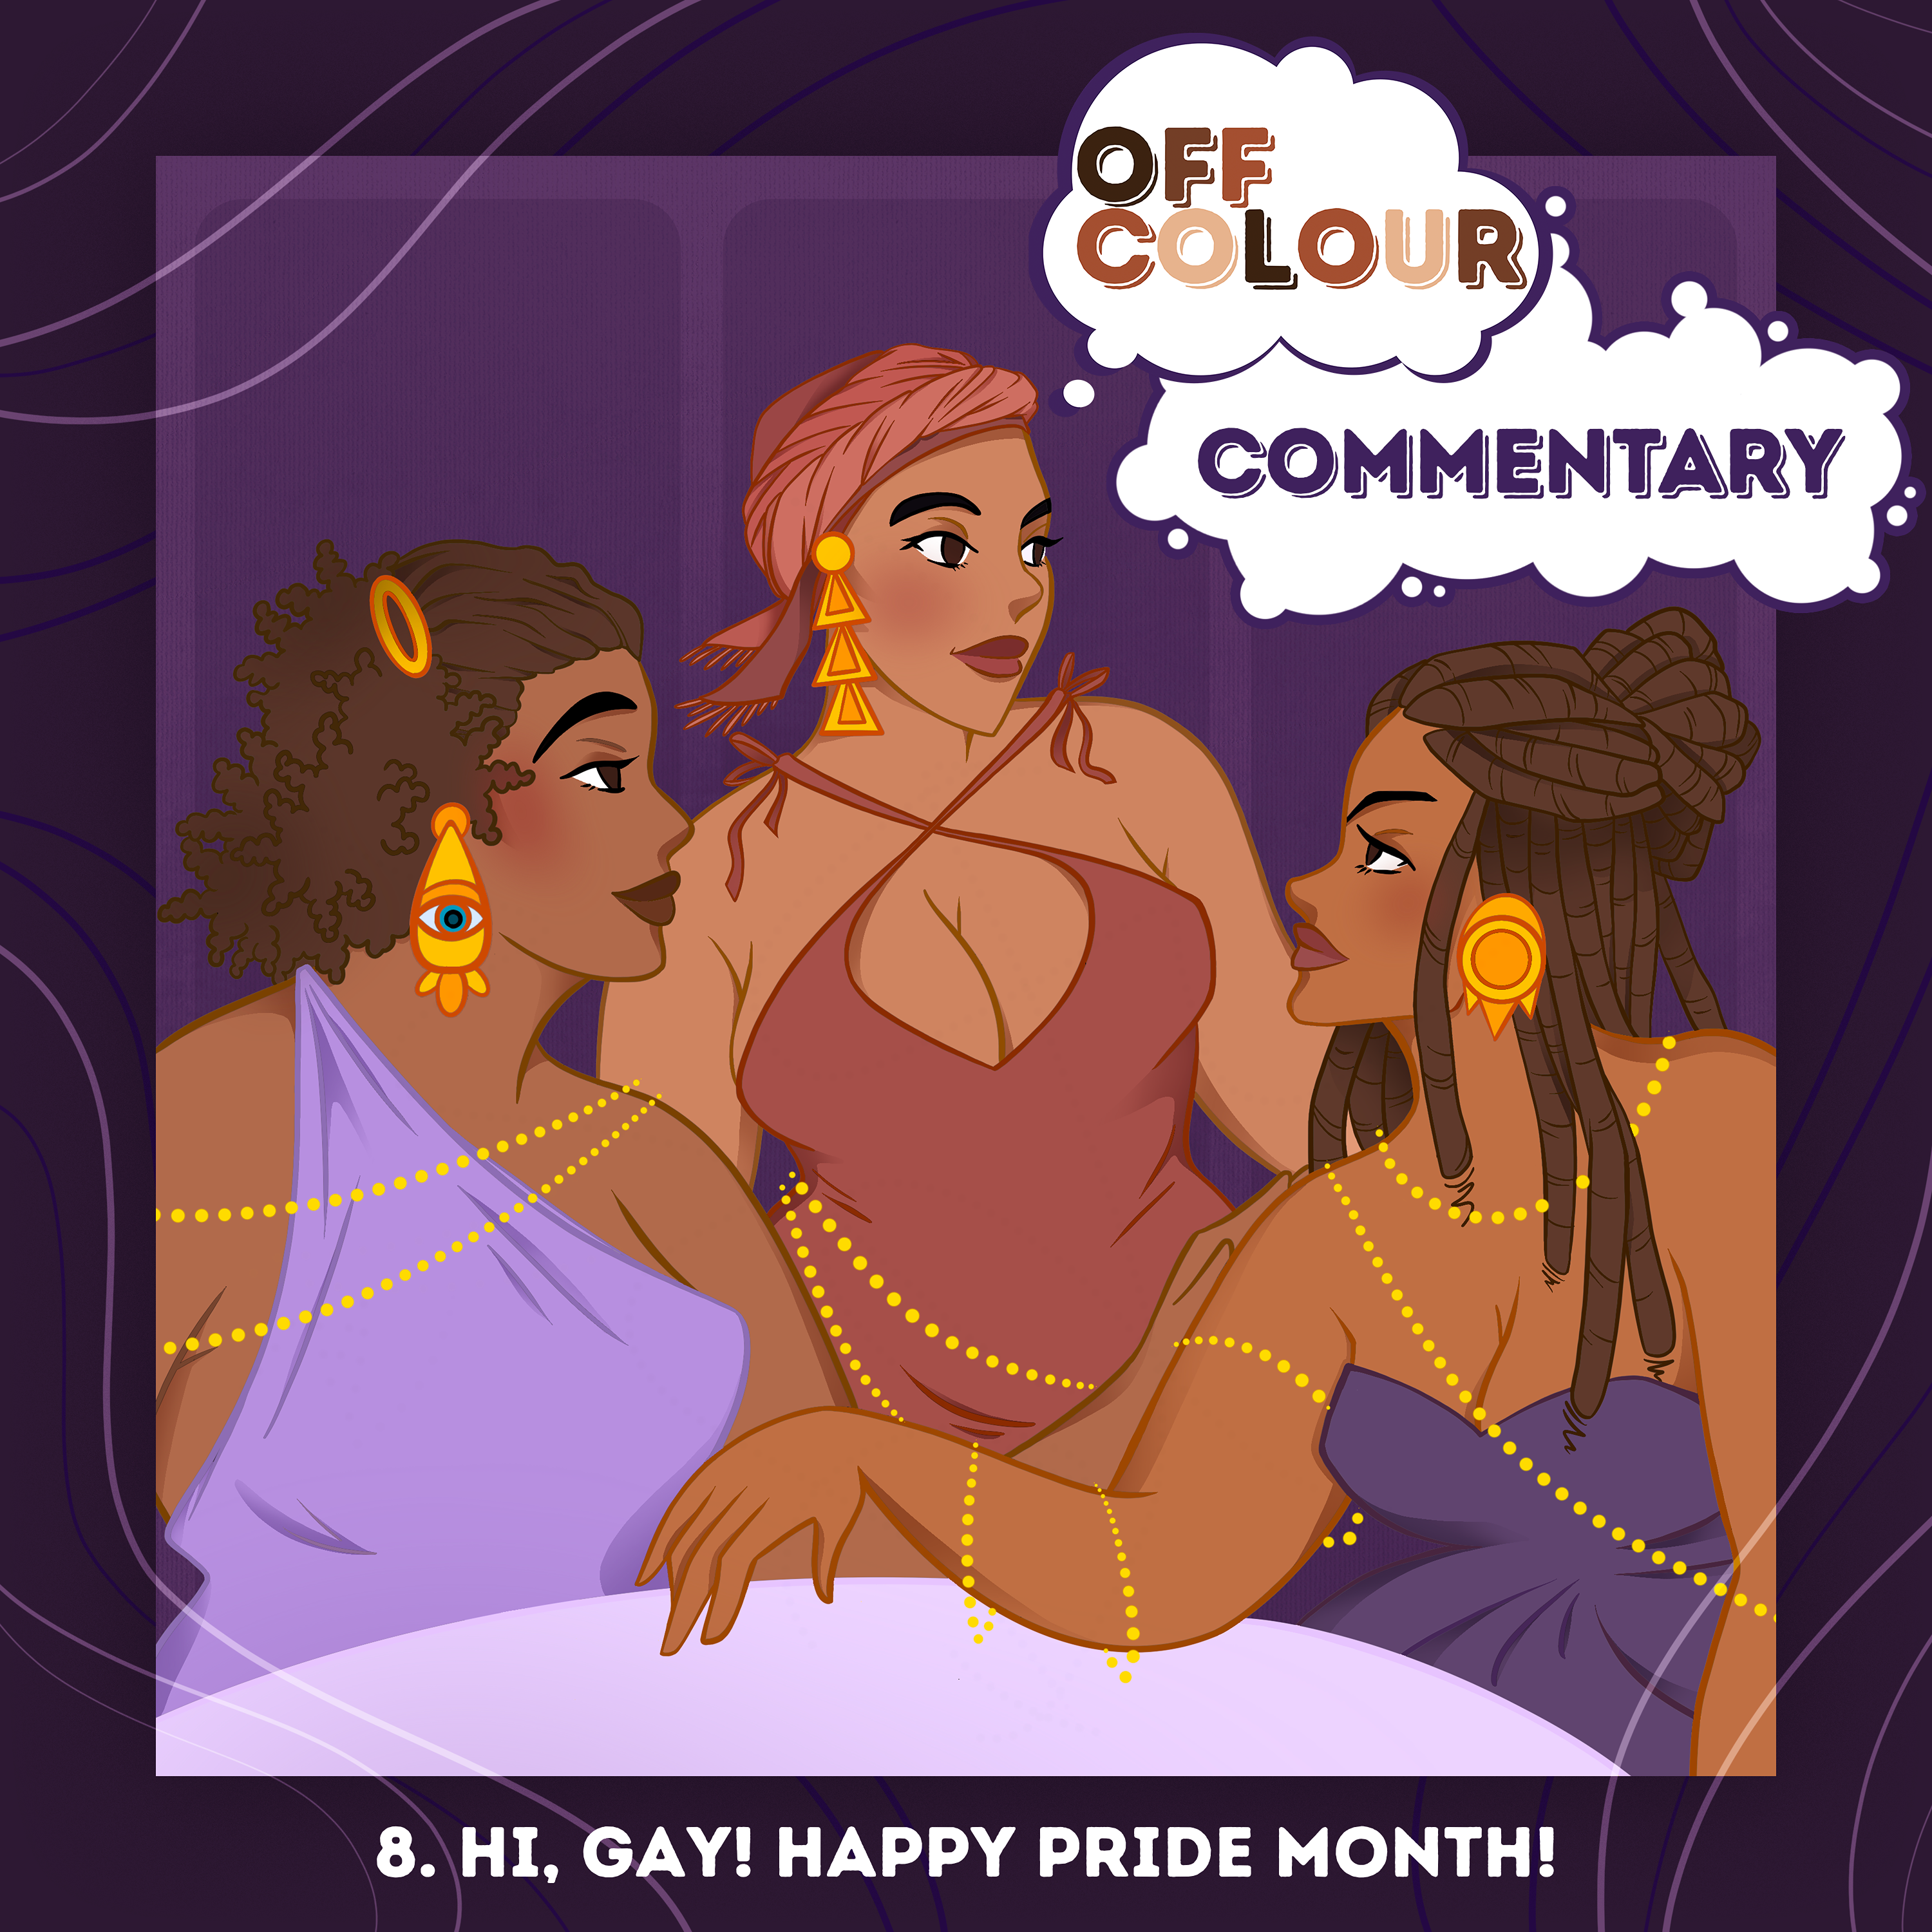 8. Hi Gay! Happy Pride Month!